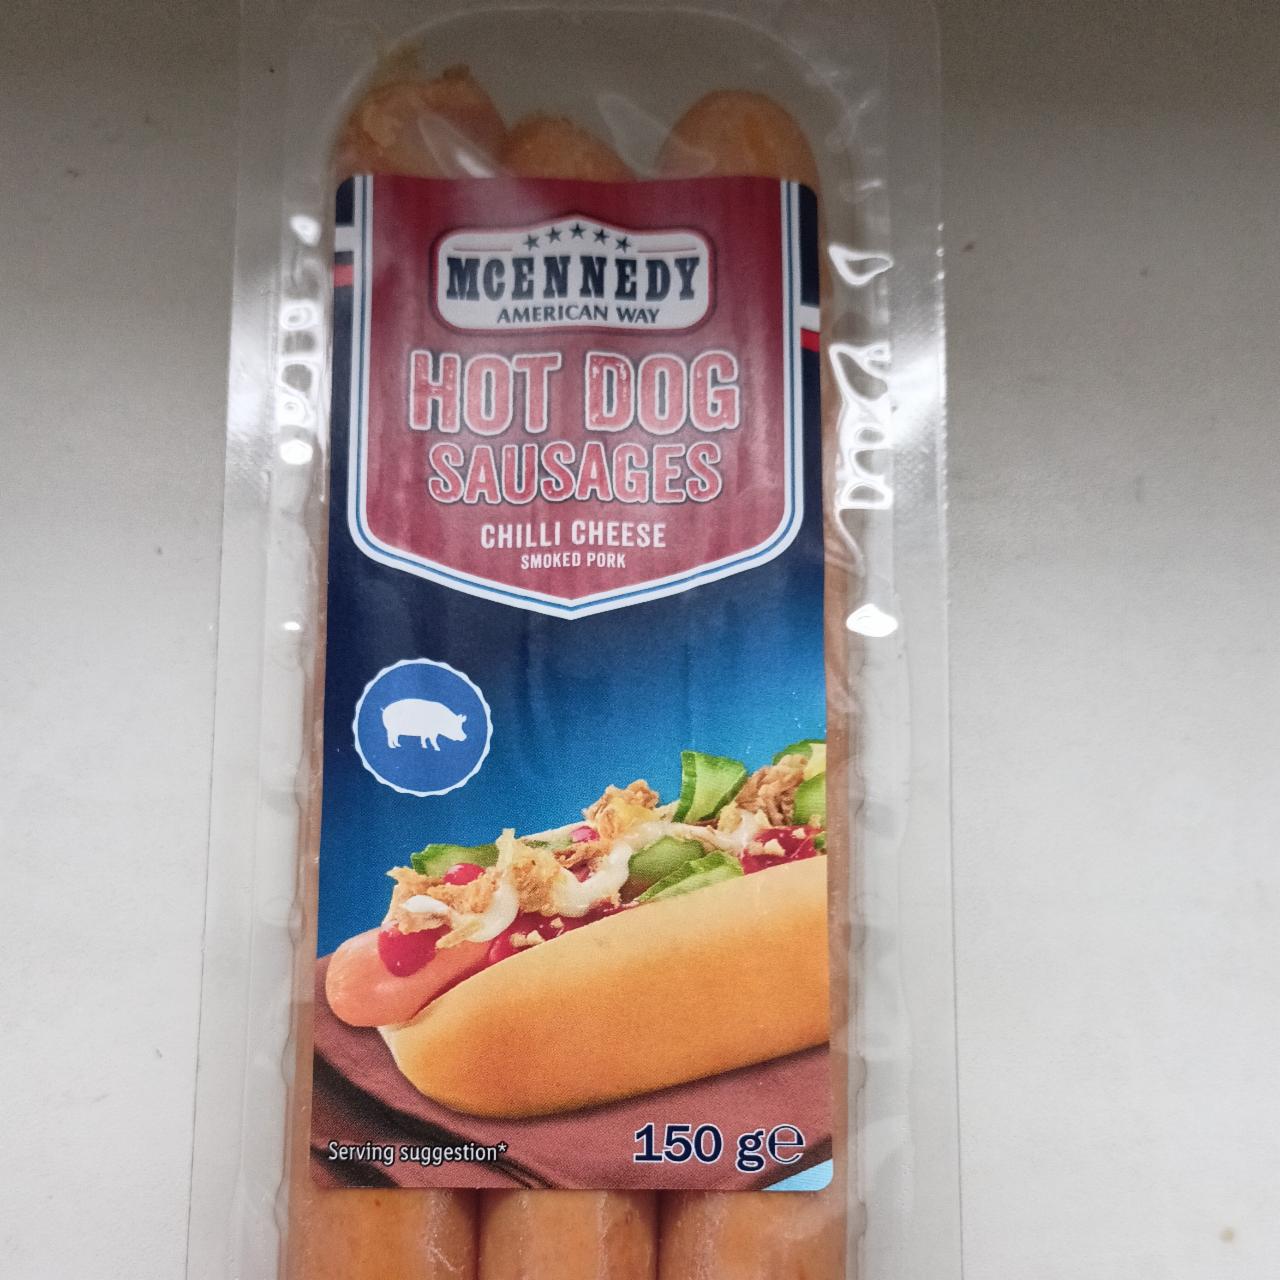 Hot dog Suasages Chilli cheese nutriční - a hodnoty kalorie, McEnnedy American kJ Way